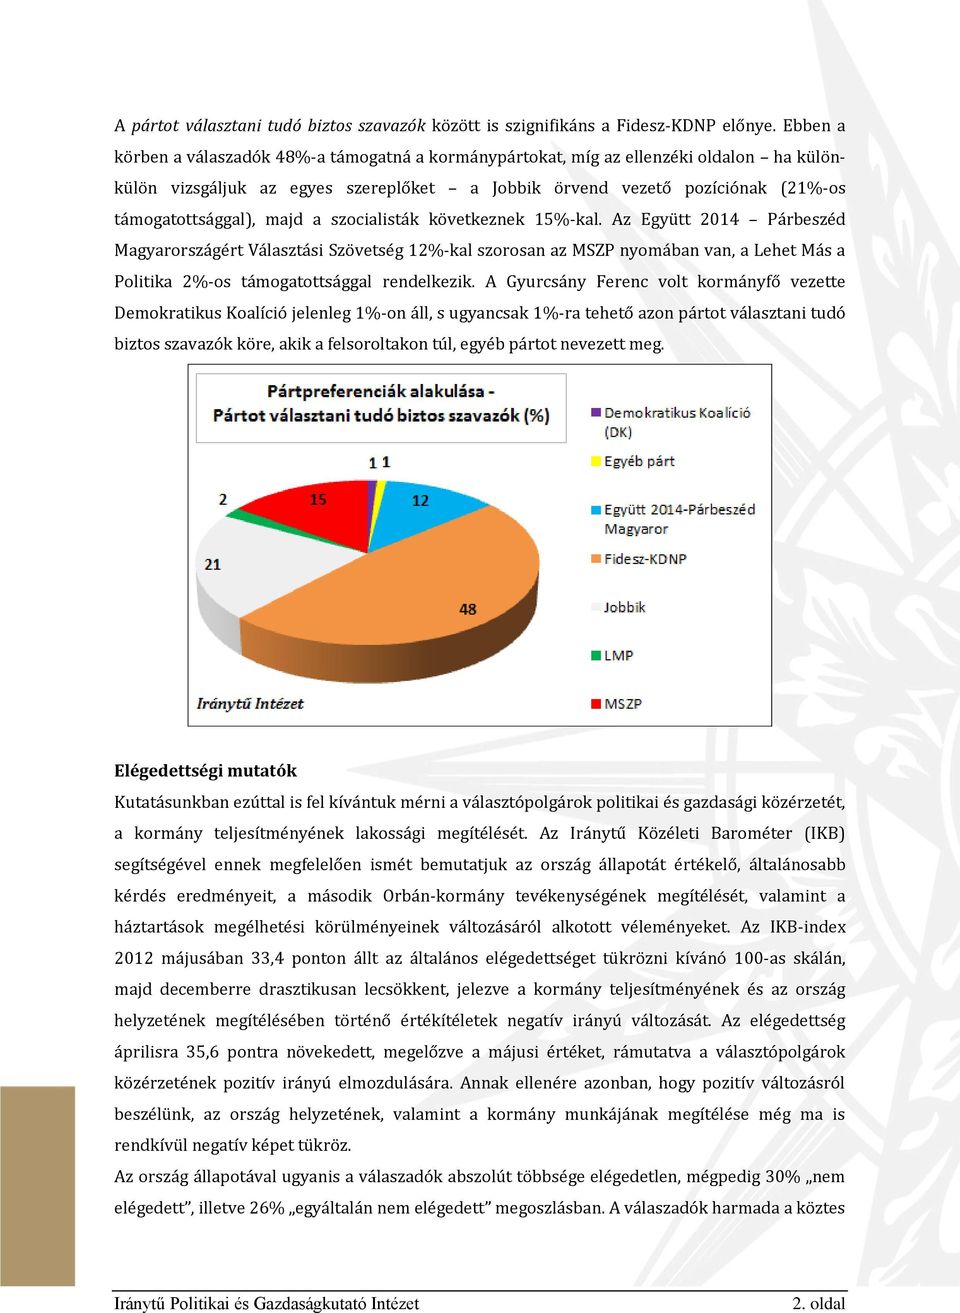 a szocialisták következnek 15%-kal. Az Együtt 2014 Párbeszéd Magyarországért Választási Szövetség 12%-kal szorosan az MSZP nyomában van, a Lehet Más a Politika 2%-os támogatottsággal rendelkezik.